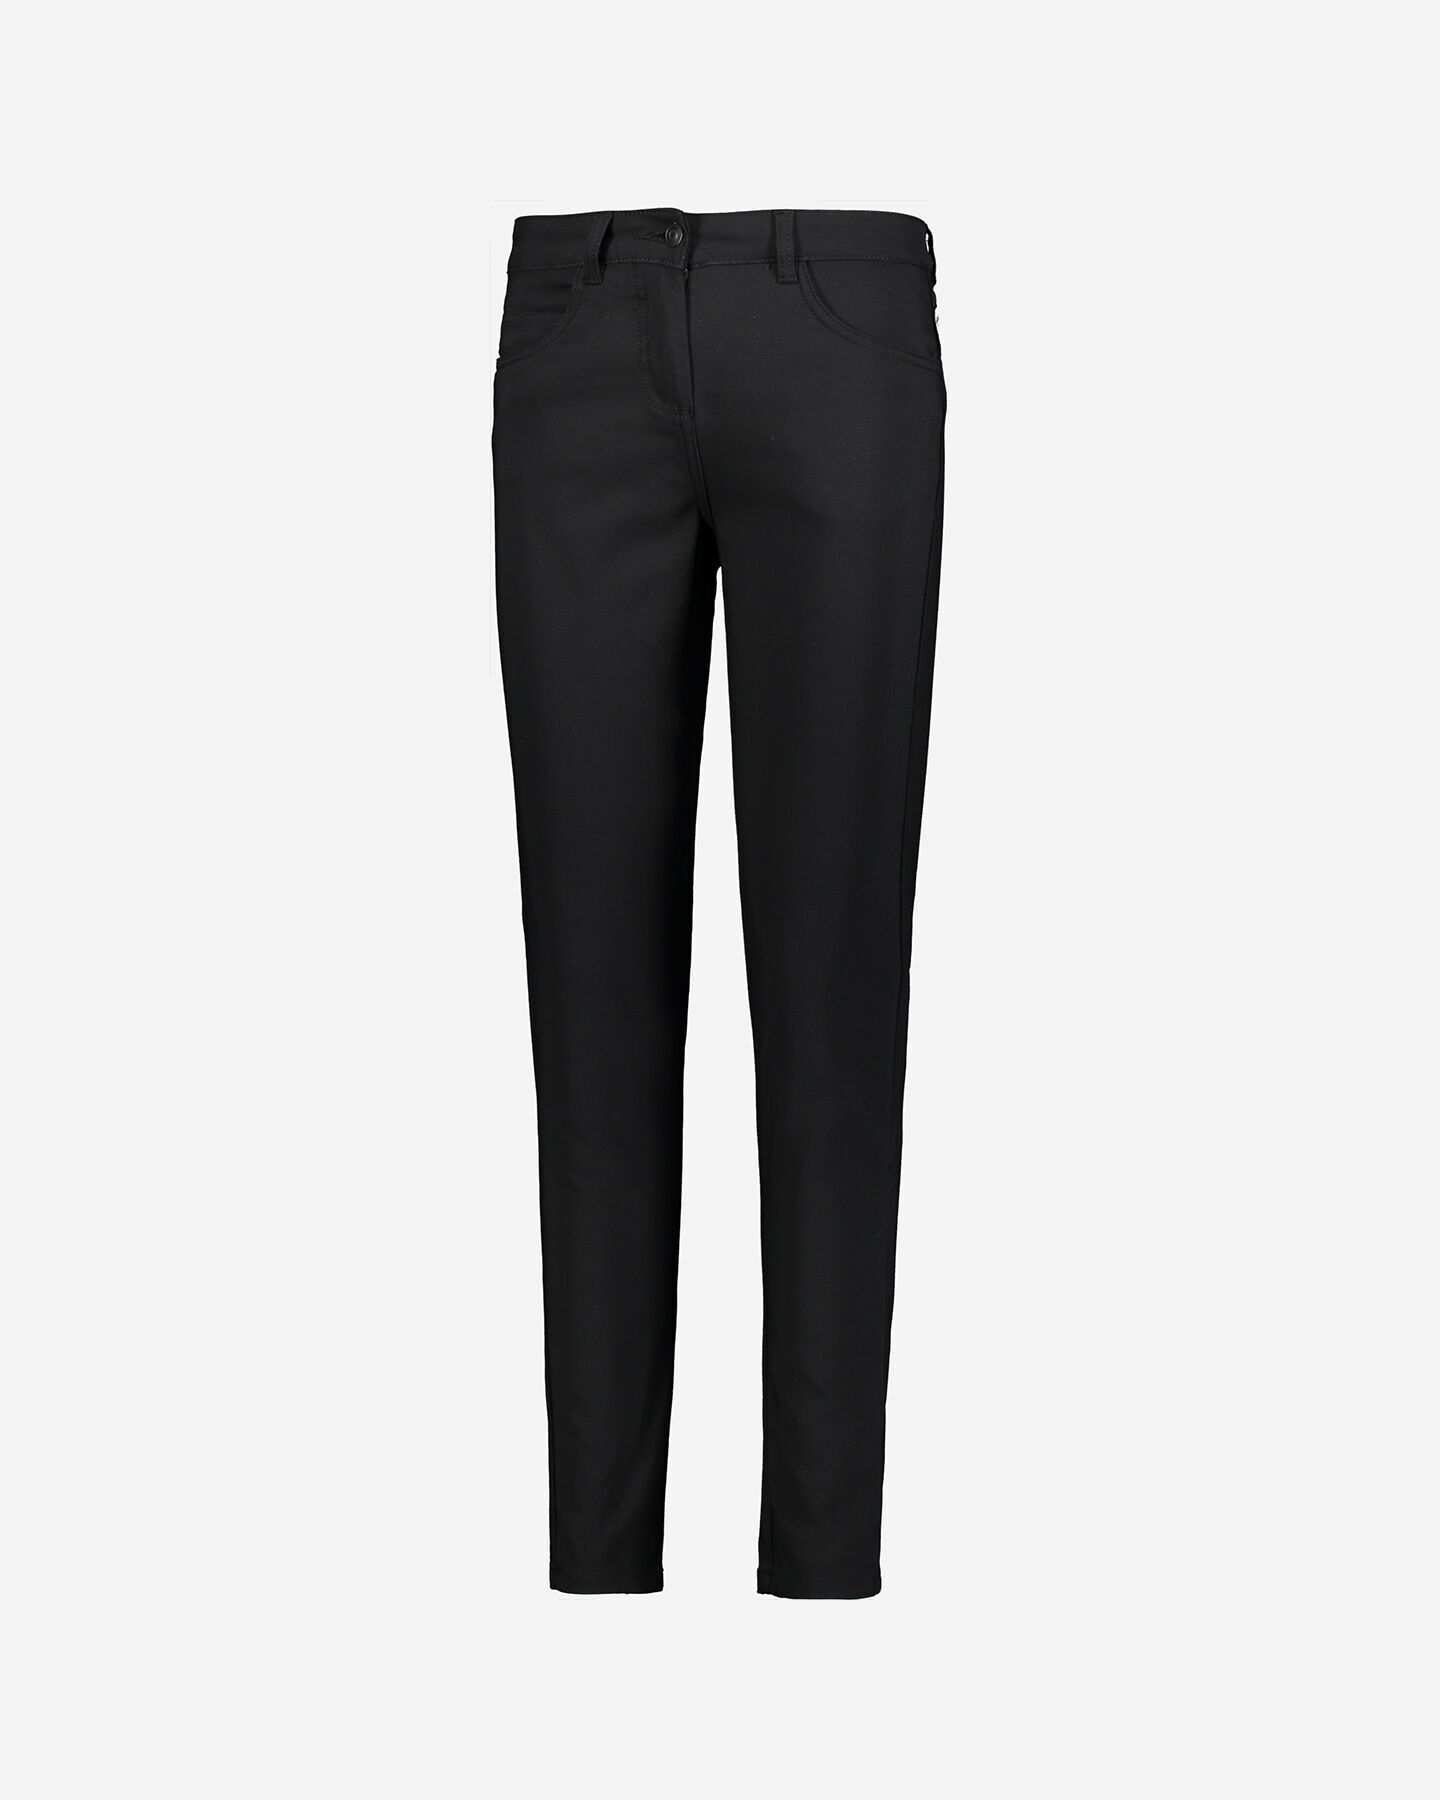  Pantalone DACK'S 5T STRETCH W S4080140|050|40 scatto 4